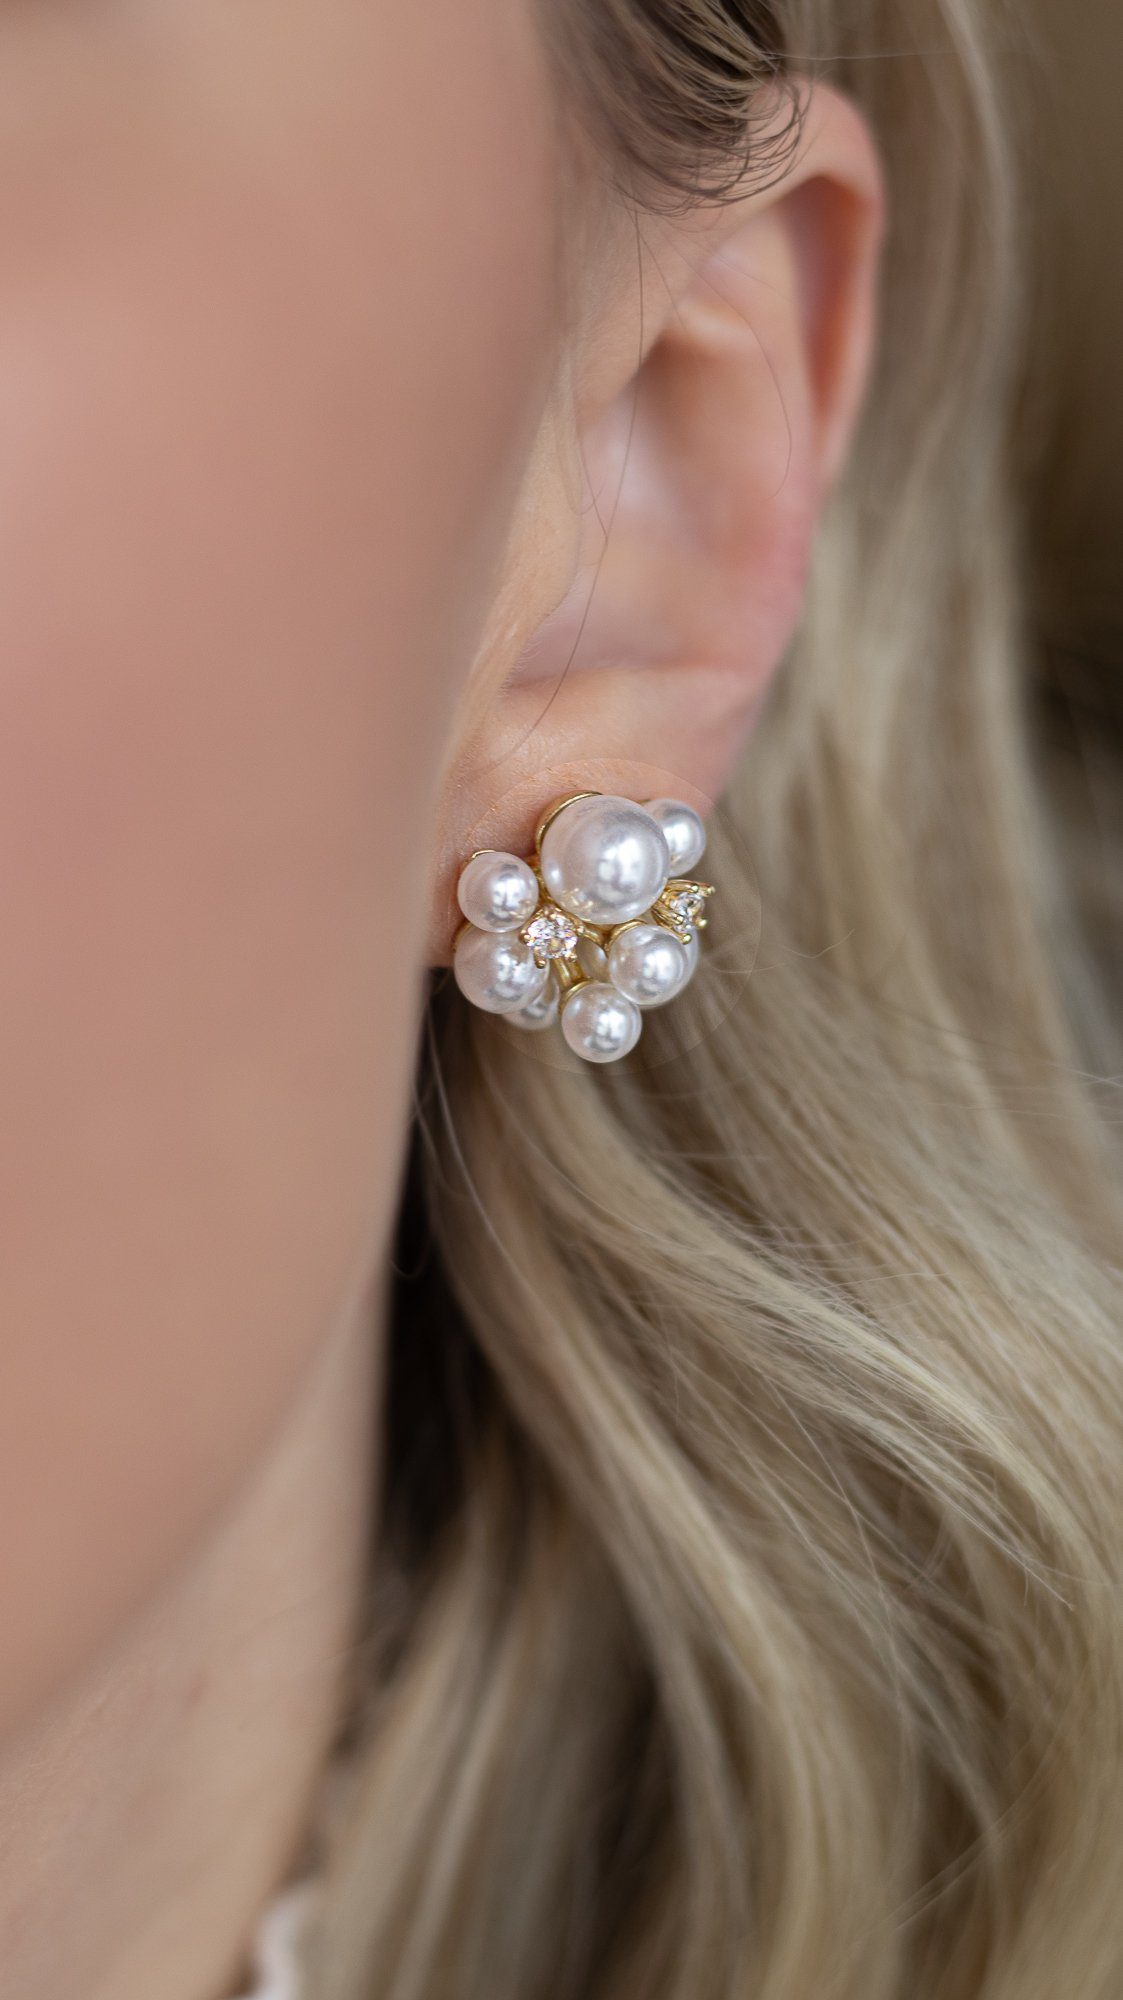 Günstige Ohrringe für Damen kaufen » Ohrringe SALE | OTTO